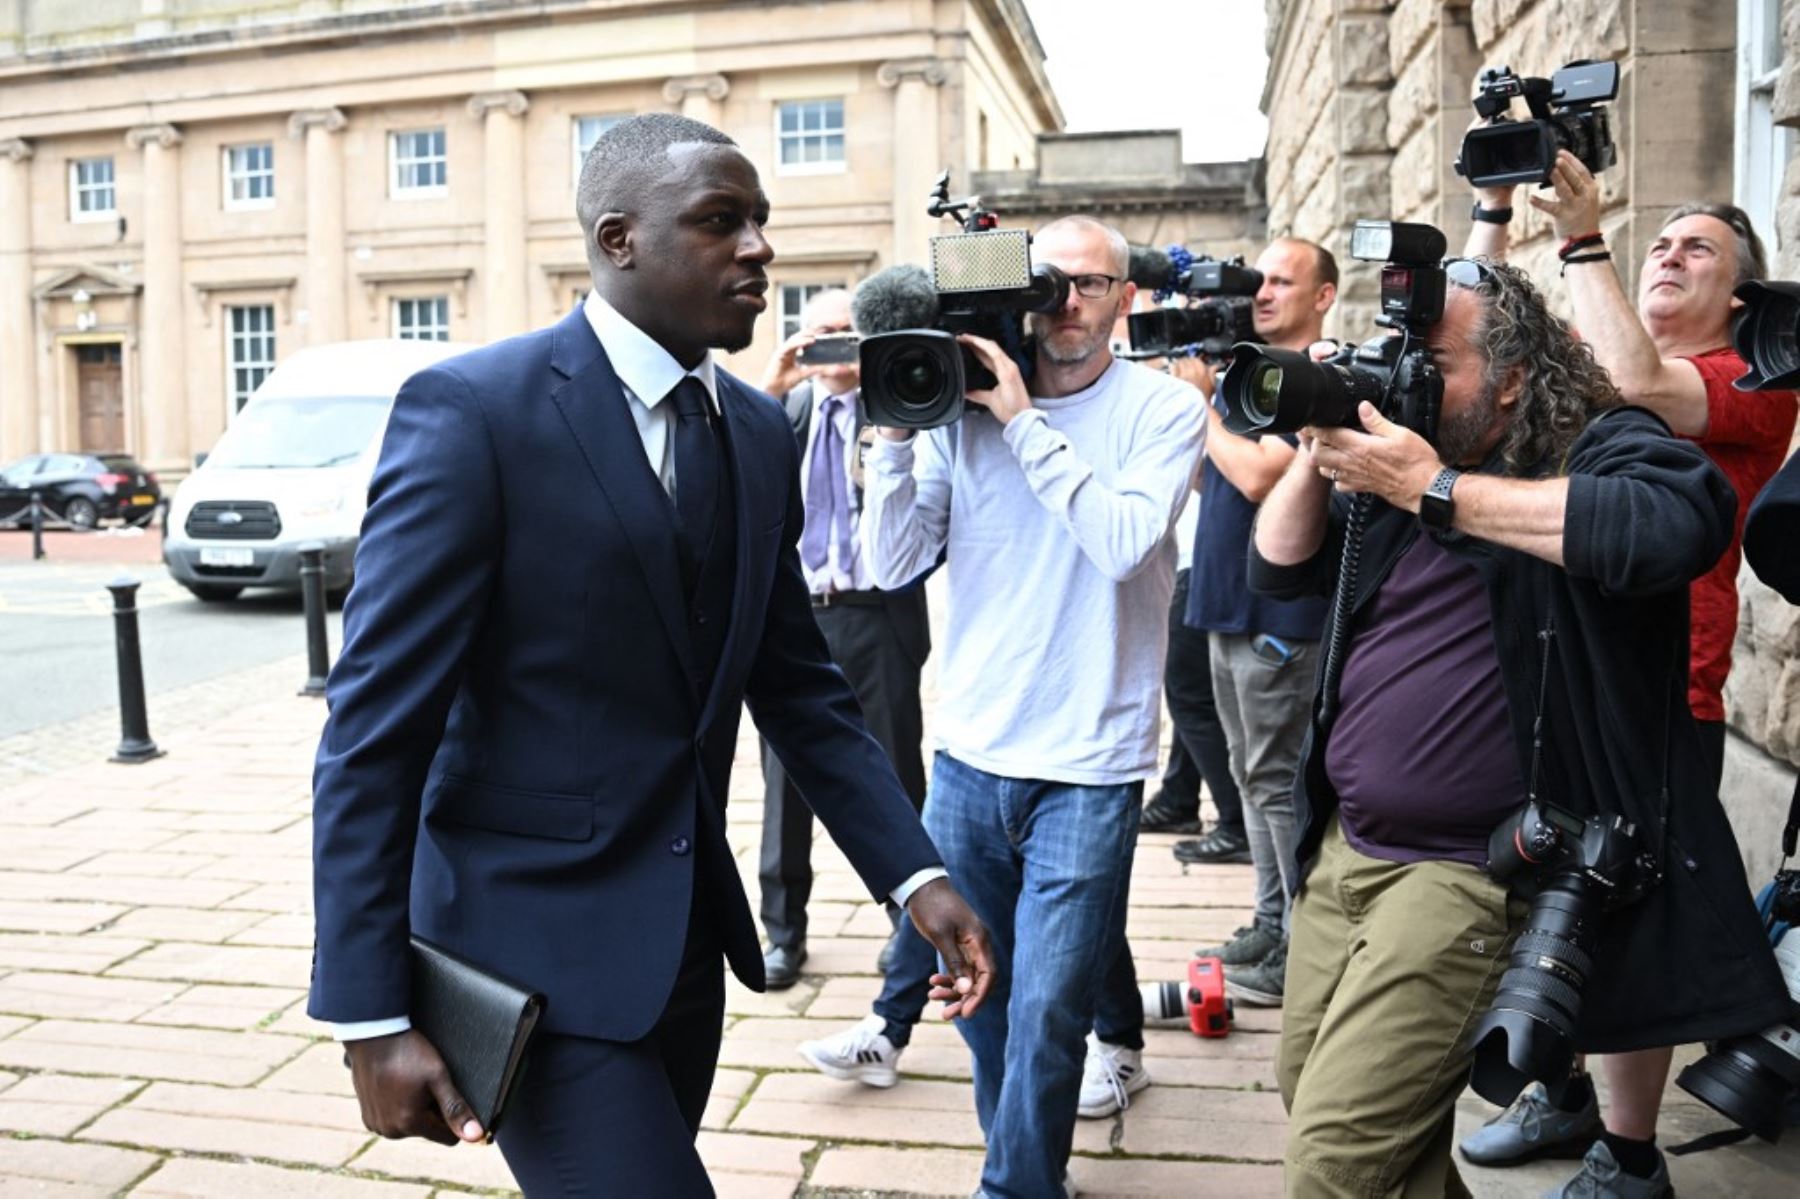 El jugador del Manchester City Benjamin, Mendy, acusado de varias violaciones en Inglaterra, fue presentado este lunes ante el jurado como un "depredador" que abusaba de víctimas "vulnerables, aterrorizadas y aisladas".